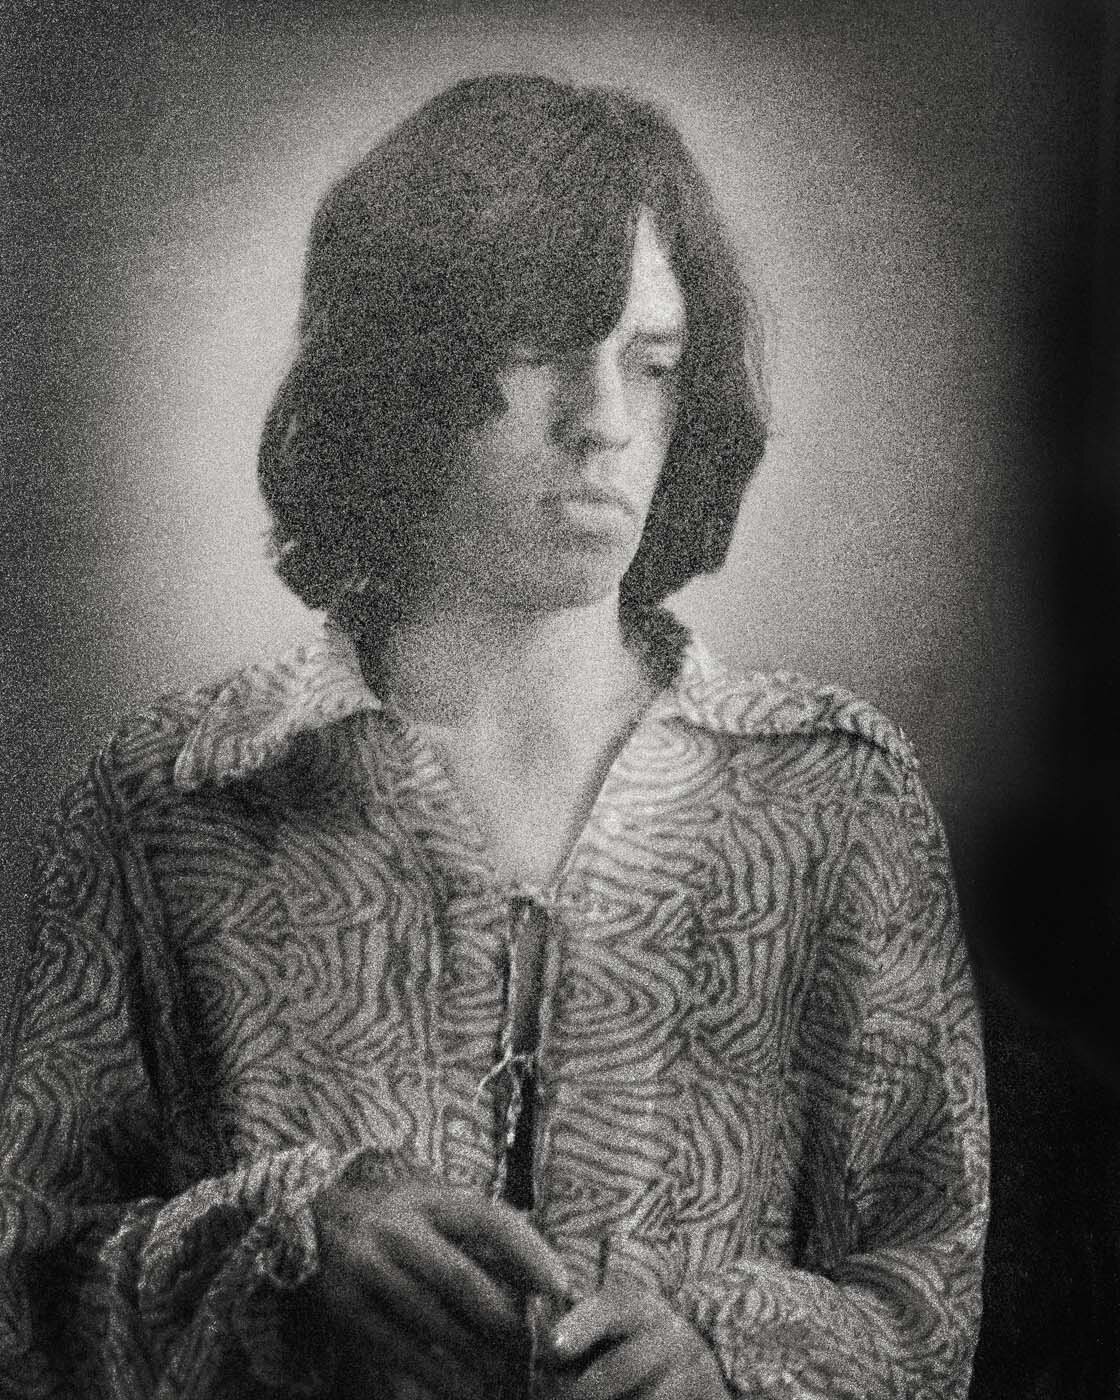 Mick_Jagger.jpg